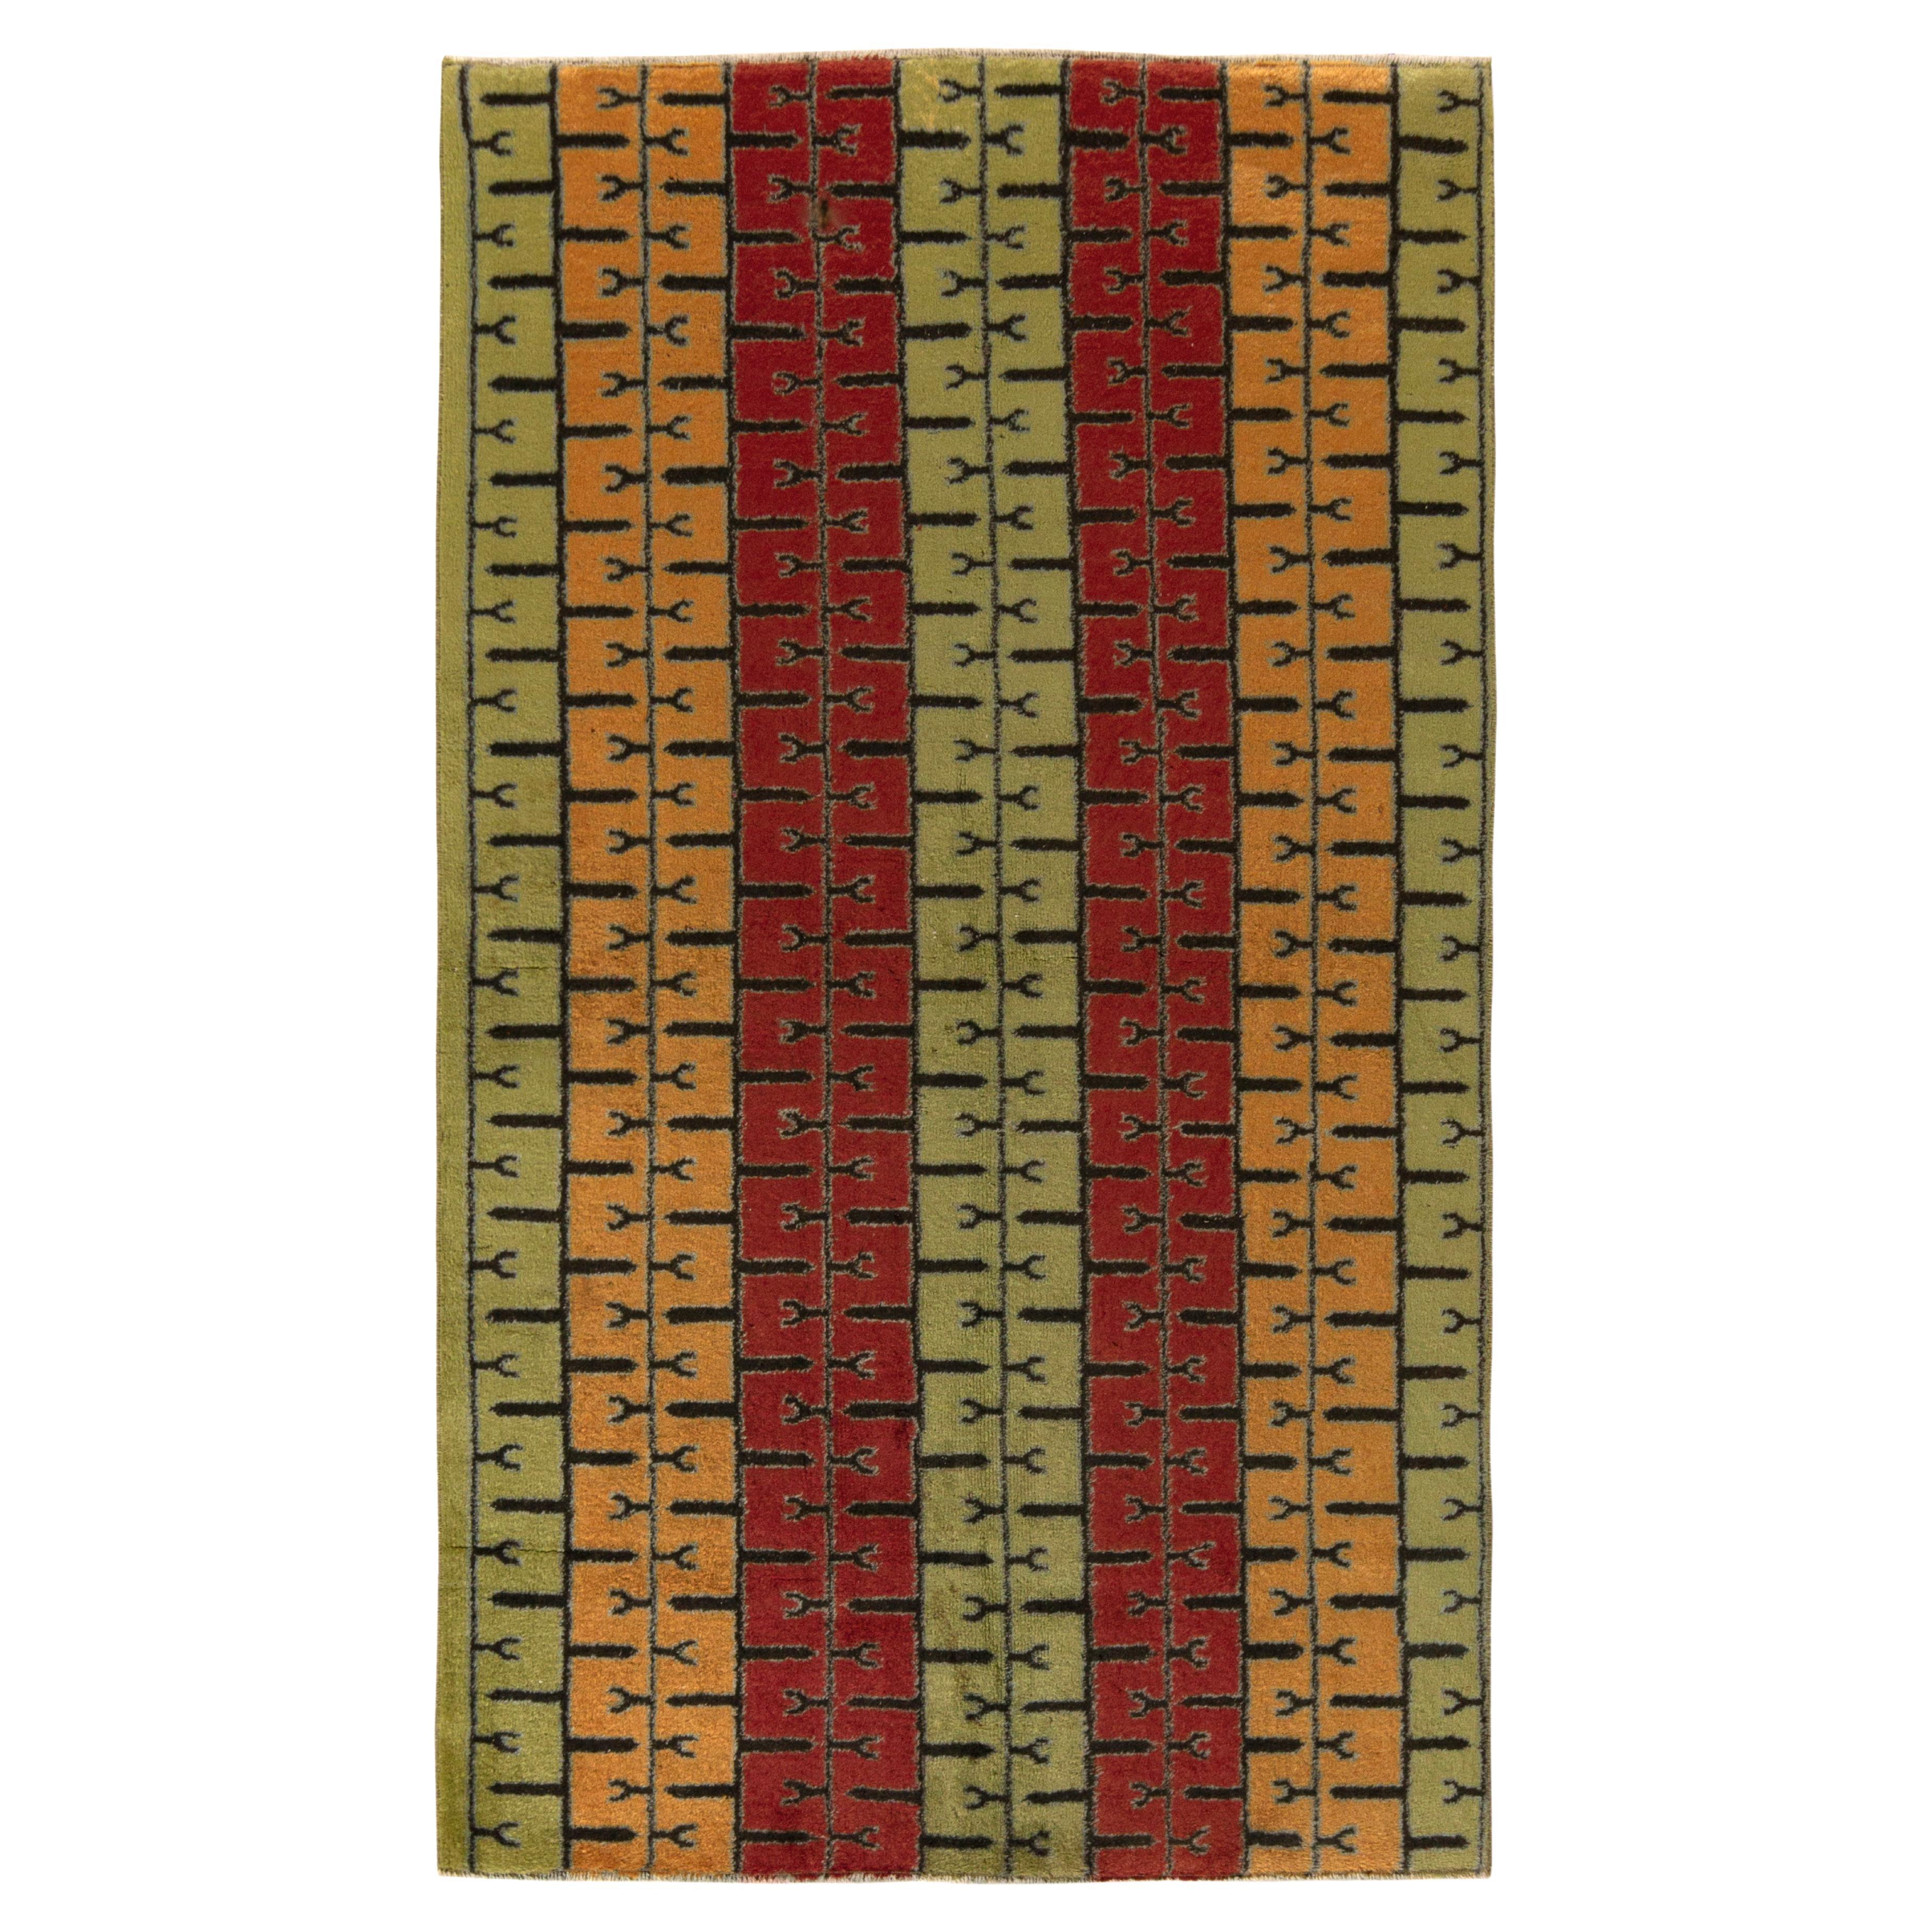 1960s Vintage Distressed Mid-Century Modern Rug, Red Deco Pattern by Rug & Kilim